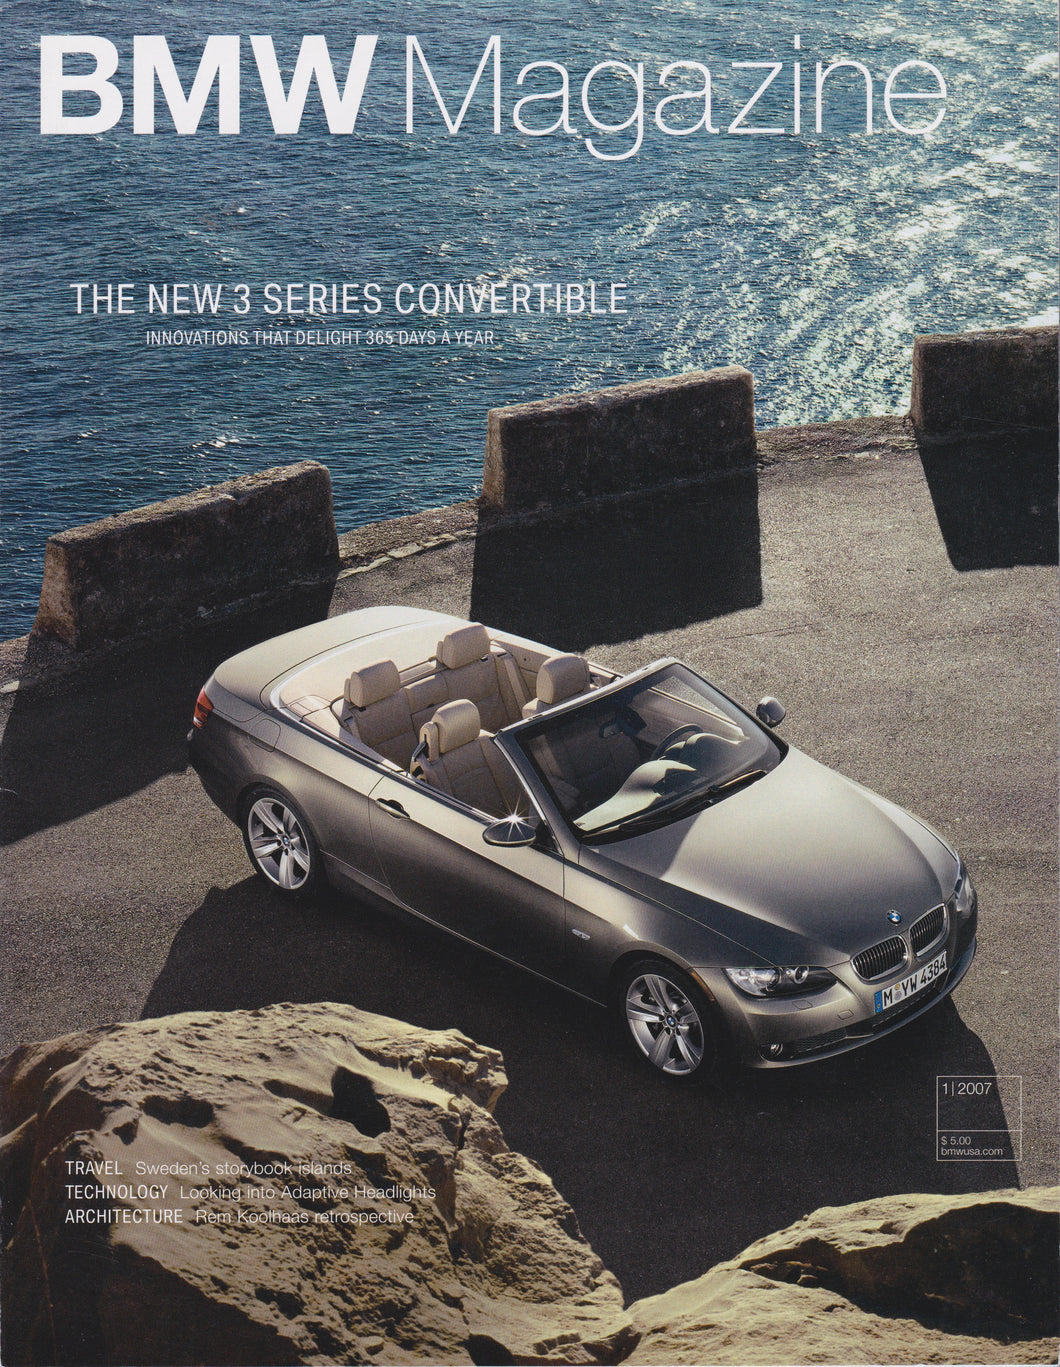 BMW Magazine / 01.2007